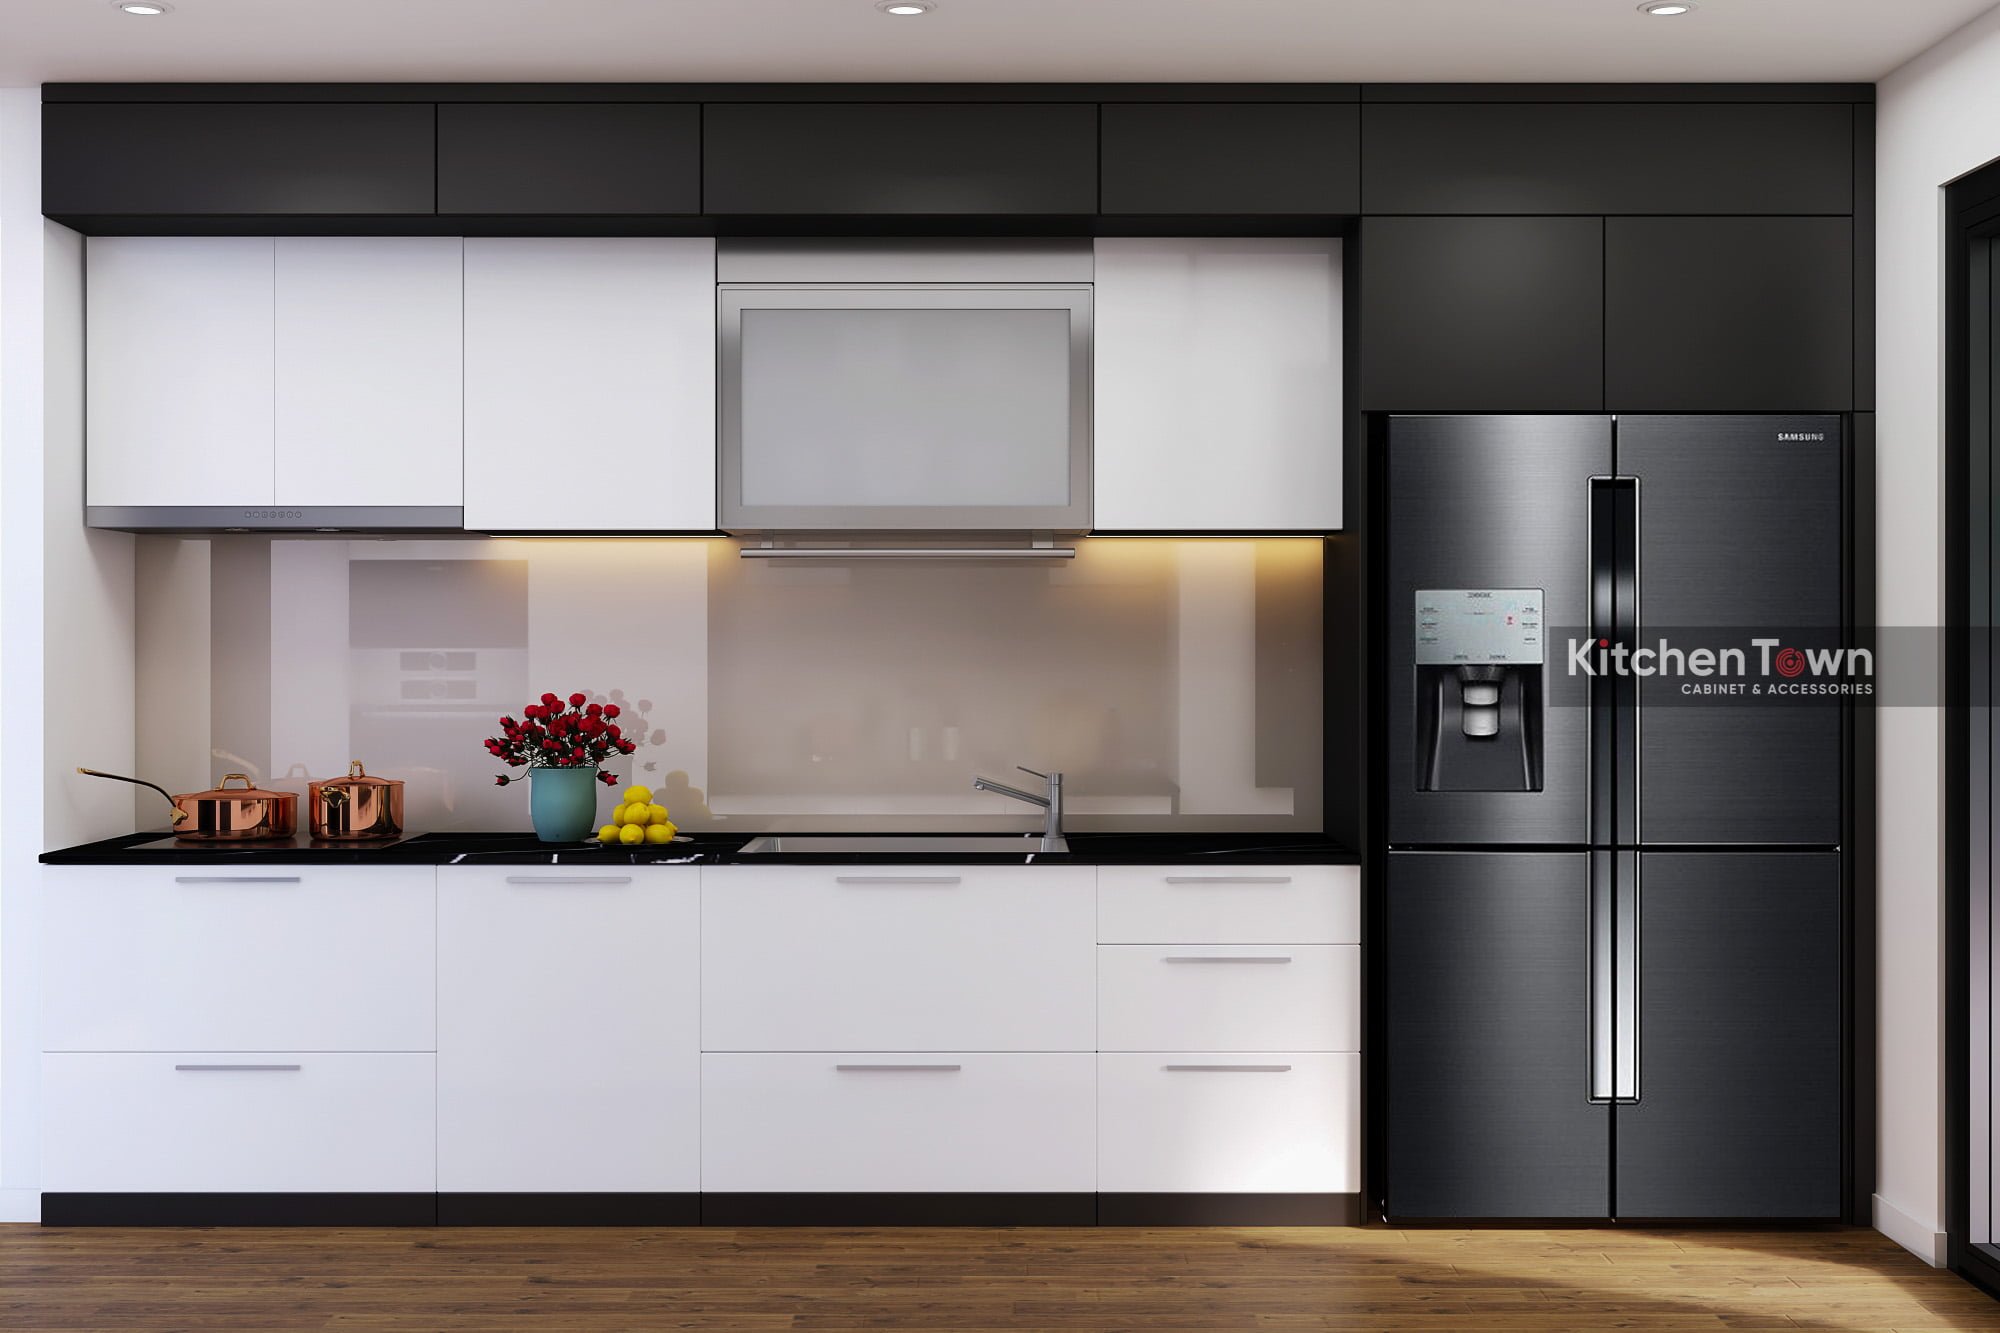 Tủ bếp là một trong những phần quan trọng nhất trong không gian bếp của bạn. Với thiết kế tủ bếp thông minh và hiện đại, chúng tôi sẽ giúp bạn tạo nên một không gian nhà bếp đẹp và tiện nghi. Hãy xem hình ảnh của chúng tôi để cảm nhận được điều này.